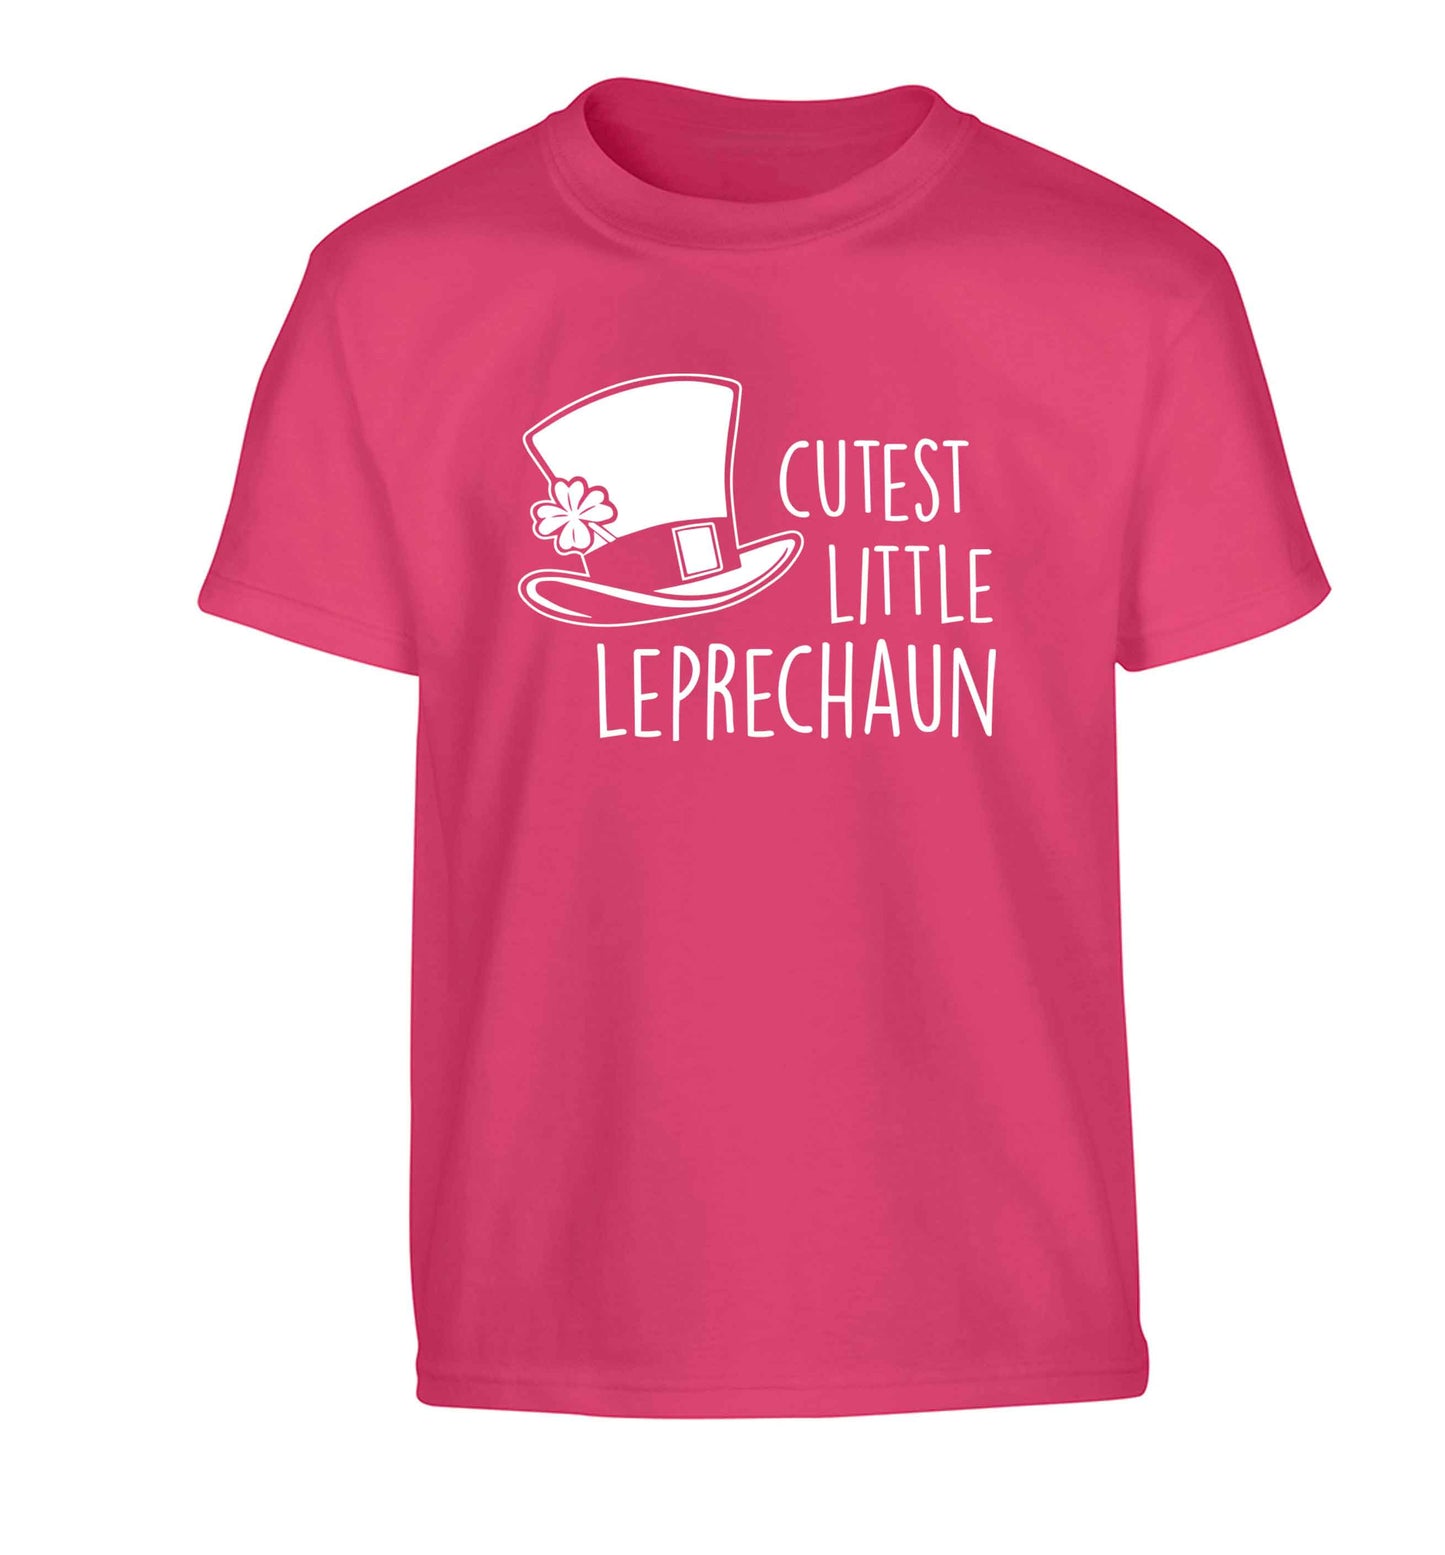 Cutest little leprechaun Children's pink Tshirt 12-13 Years